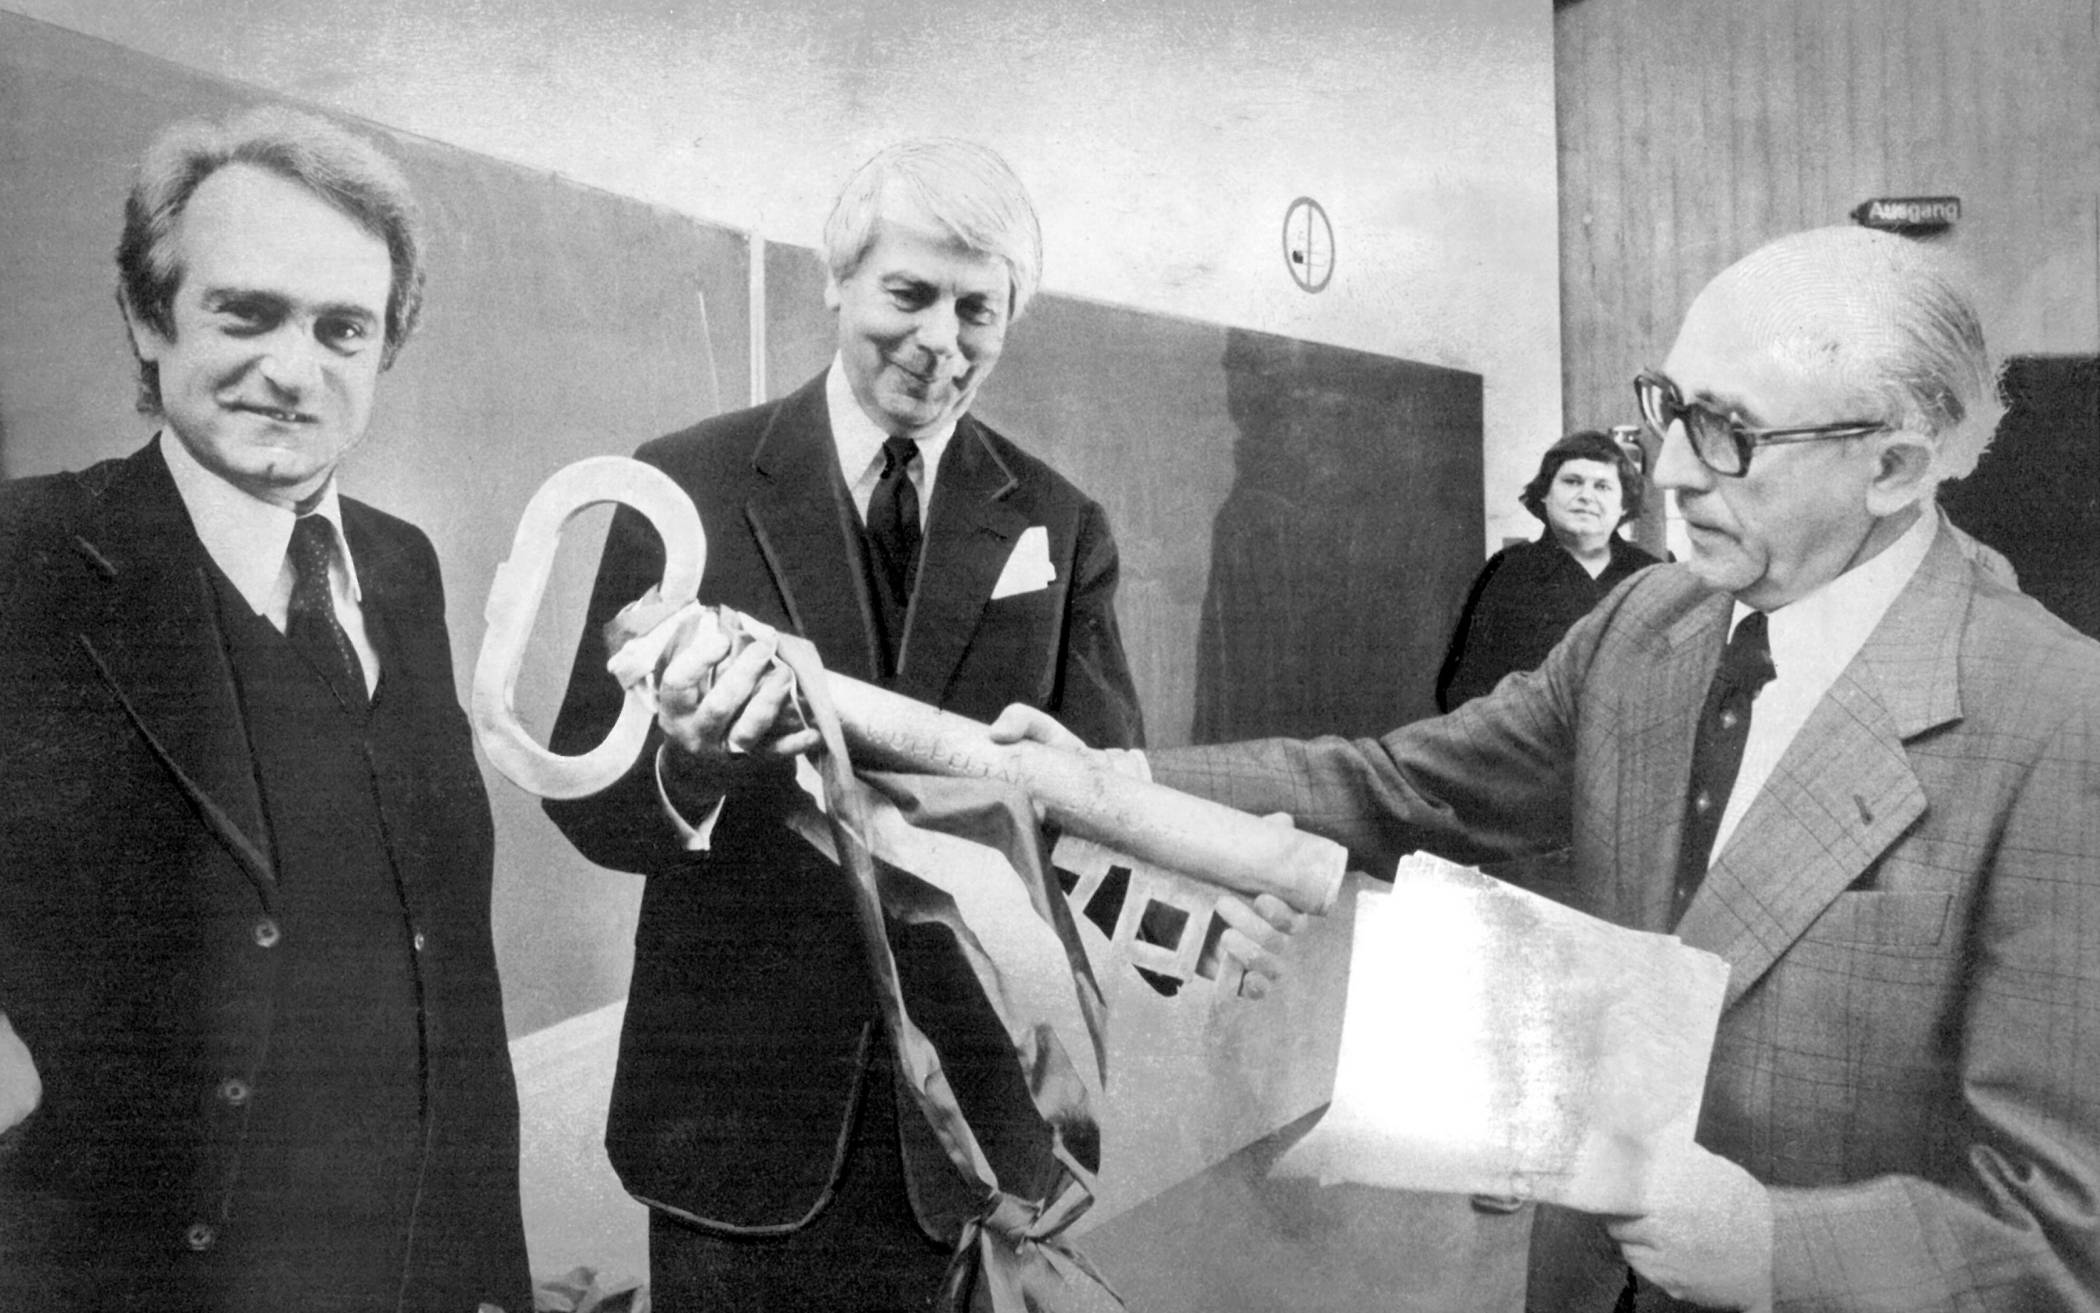  Schlüsselübergabe am 24. Oktober 1977 in Hörsaal 14. Links Johannes Rau, in der Mitte Gründungsrektor Professor Rainer Gruenter, rechts der damalige NRW-Finanzminister Professor Friedrich Halstenberg.    